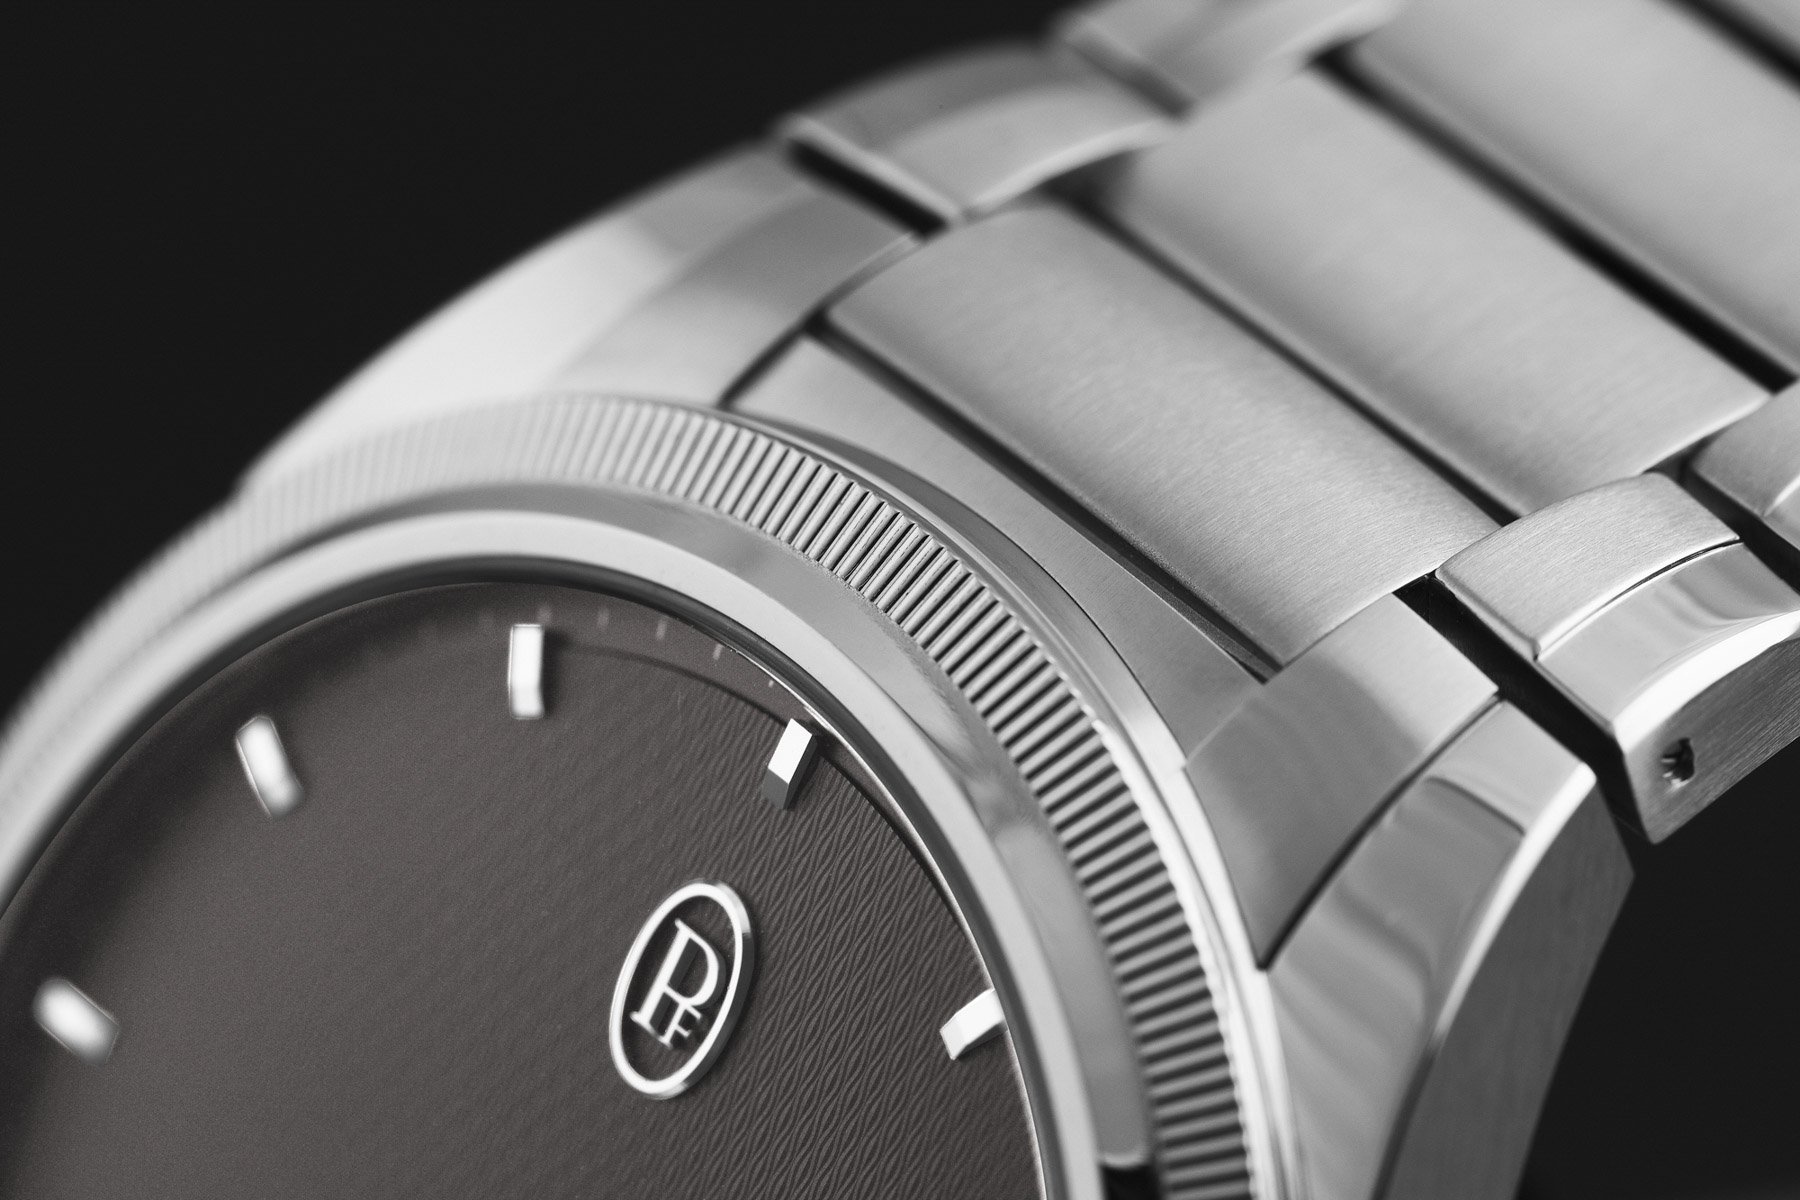 Parmigiani представляет новую коллекцию часов Tonda PF